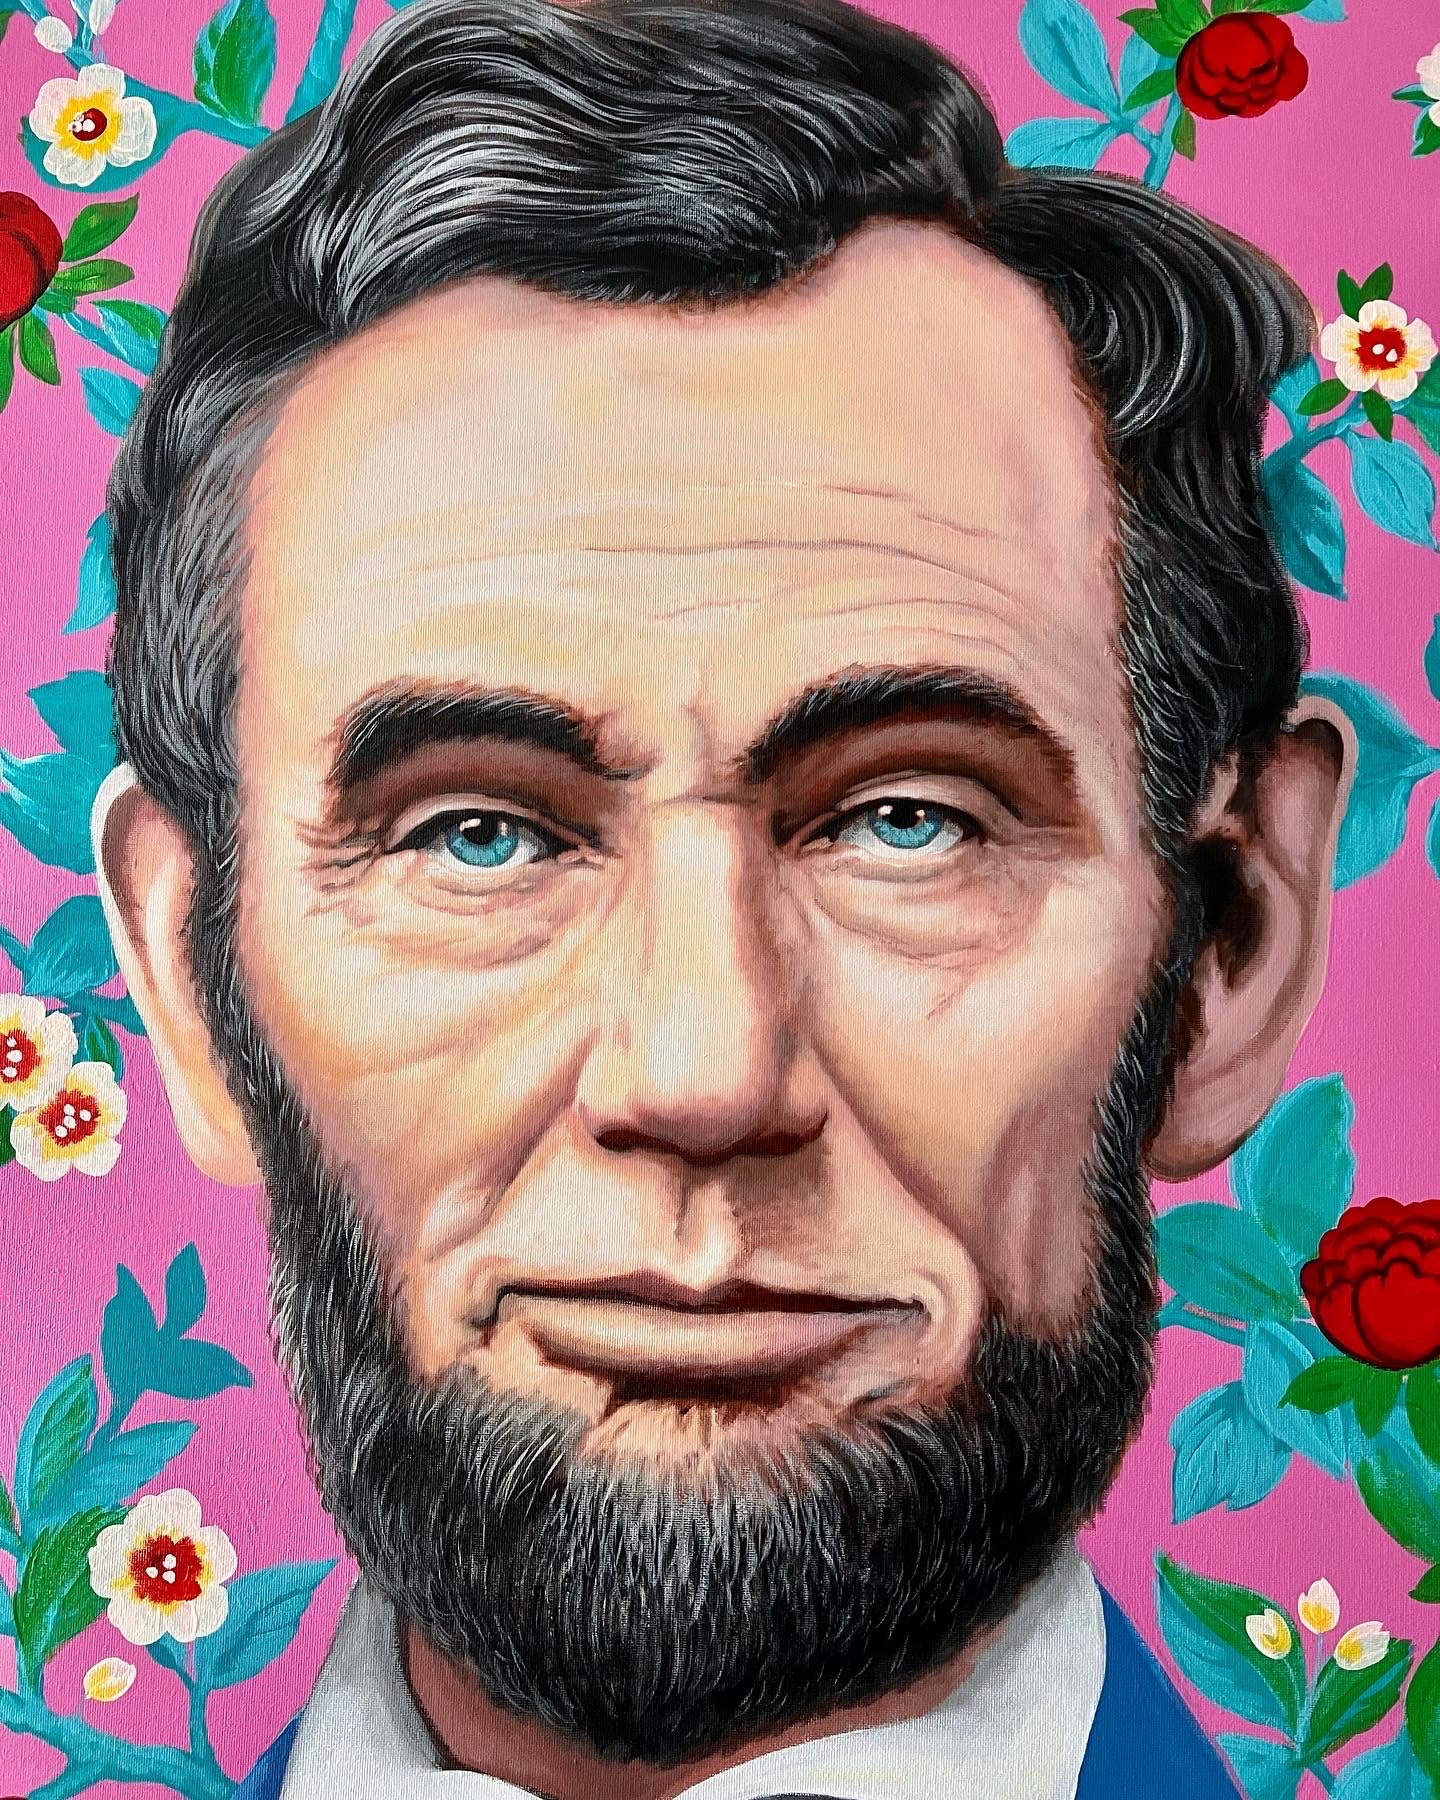 "Lincoln"